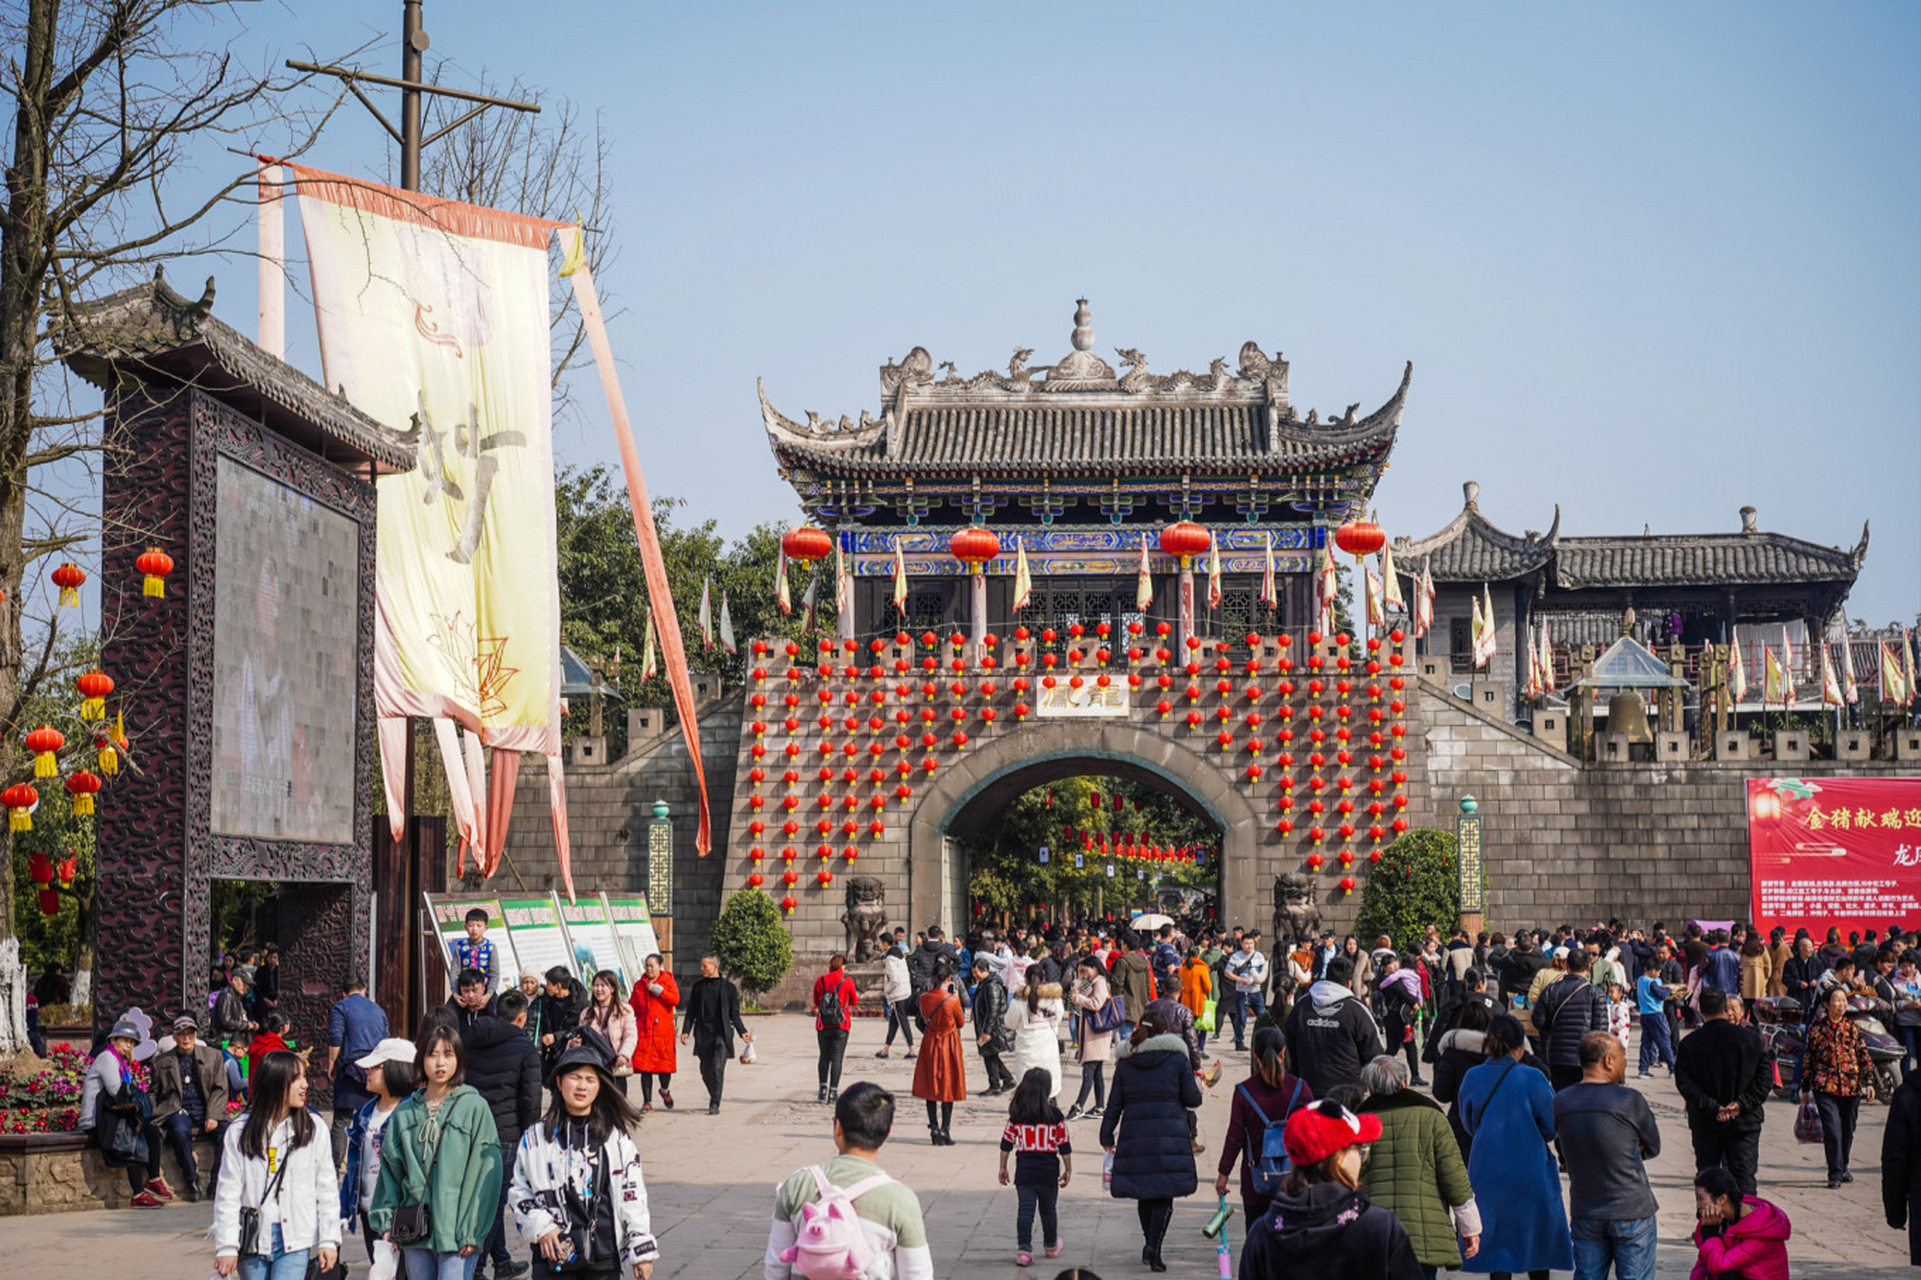 遂宁龙凤古镇,位于船山区龙凤镇,东临涪江,已有两千多年历史,这个古镇